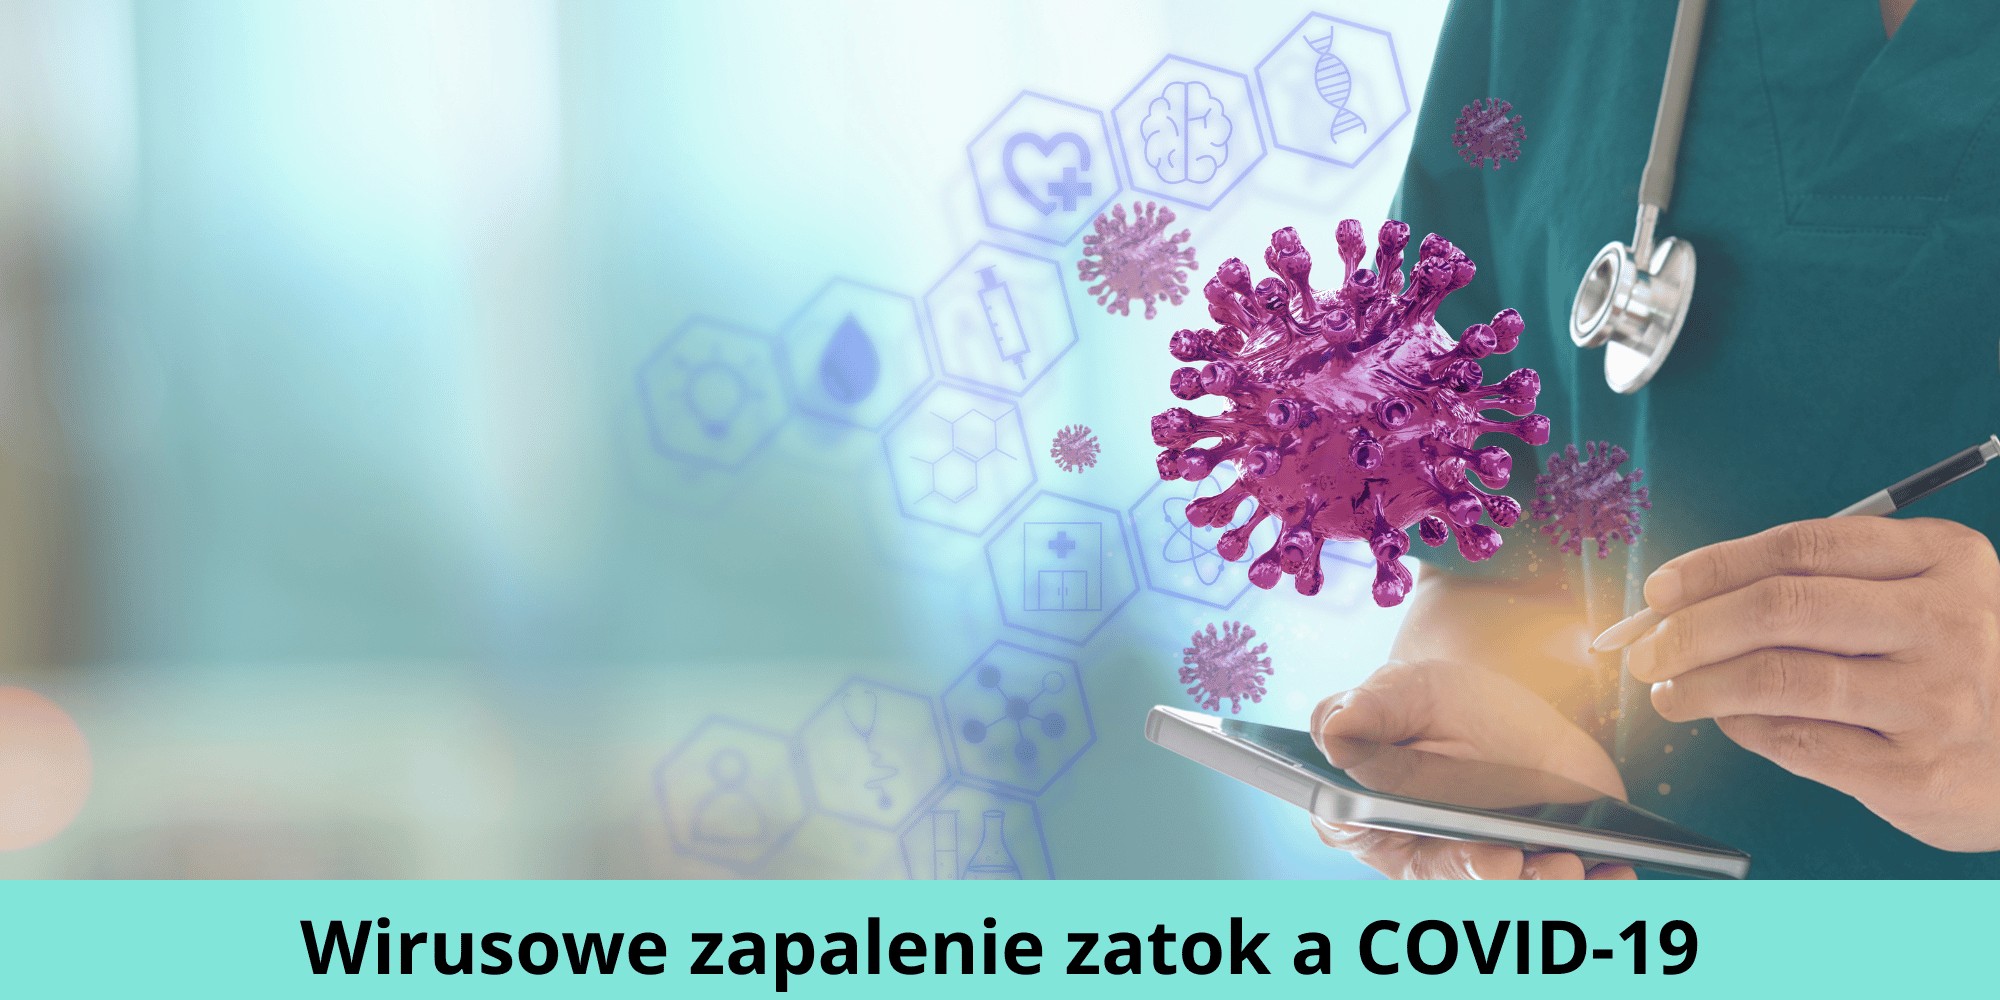 Wirusowe zapalenie zatok a COVID-19